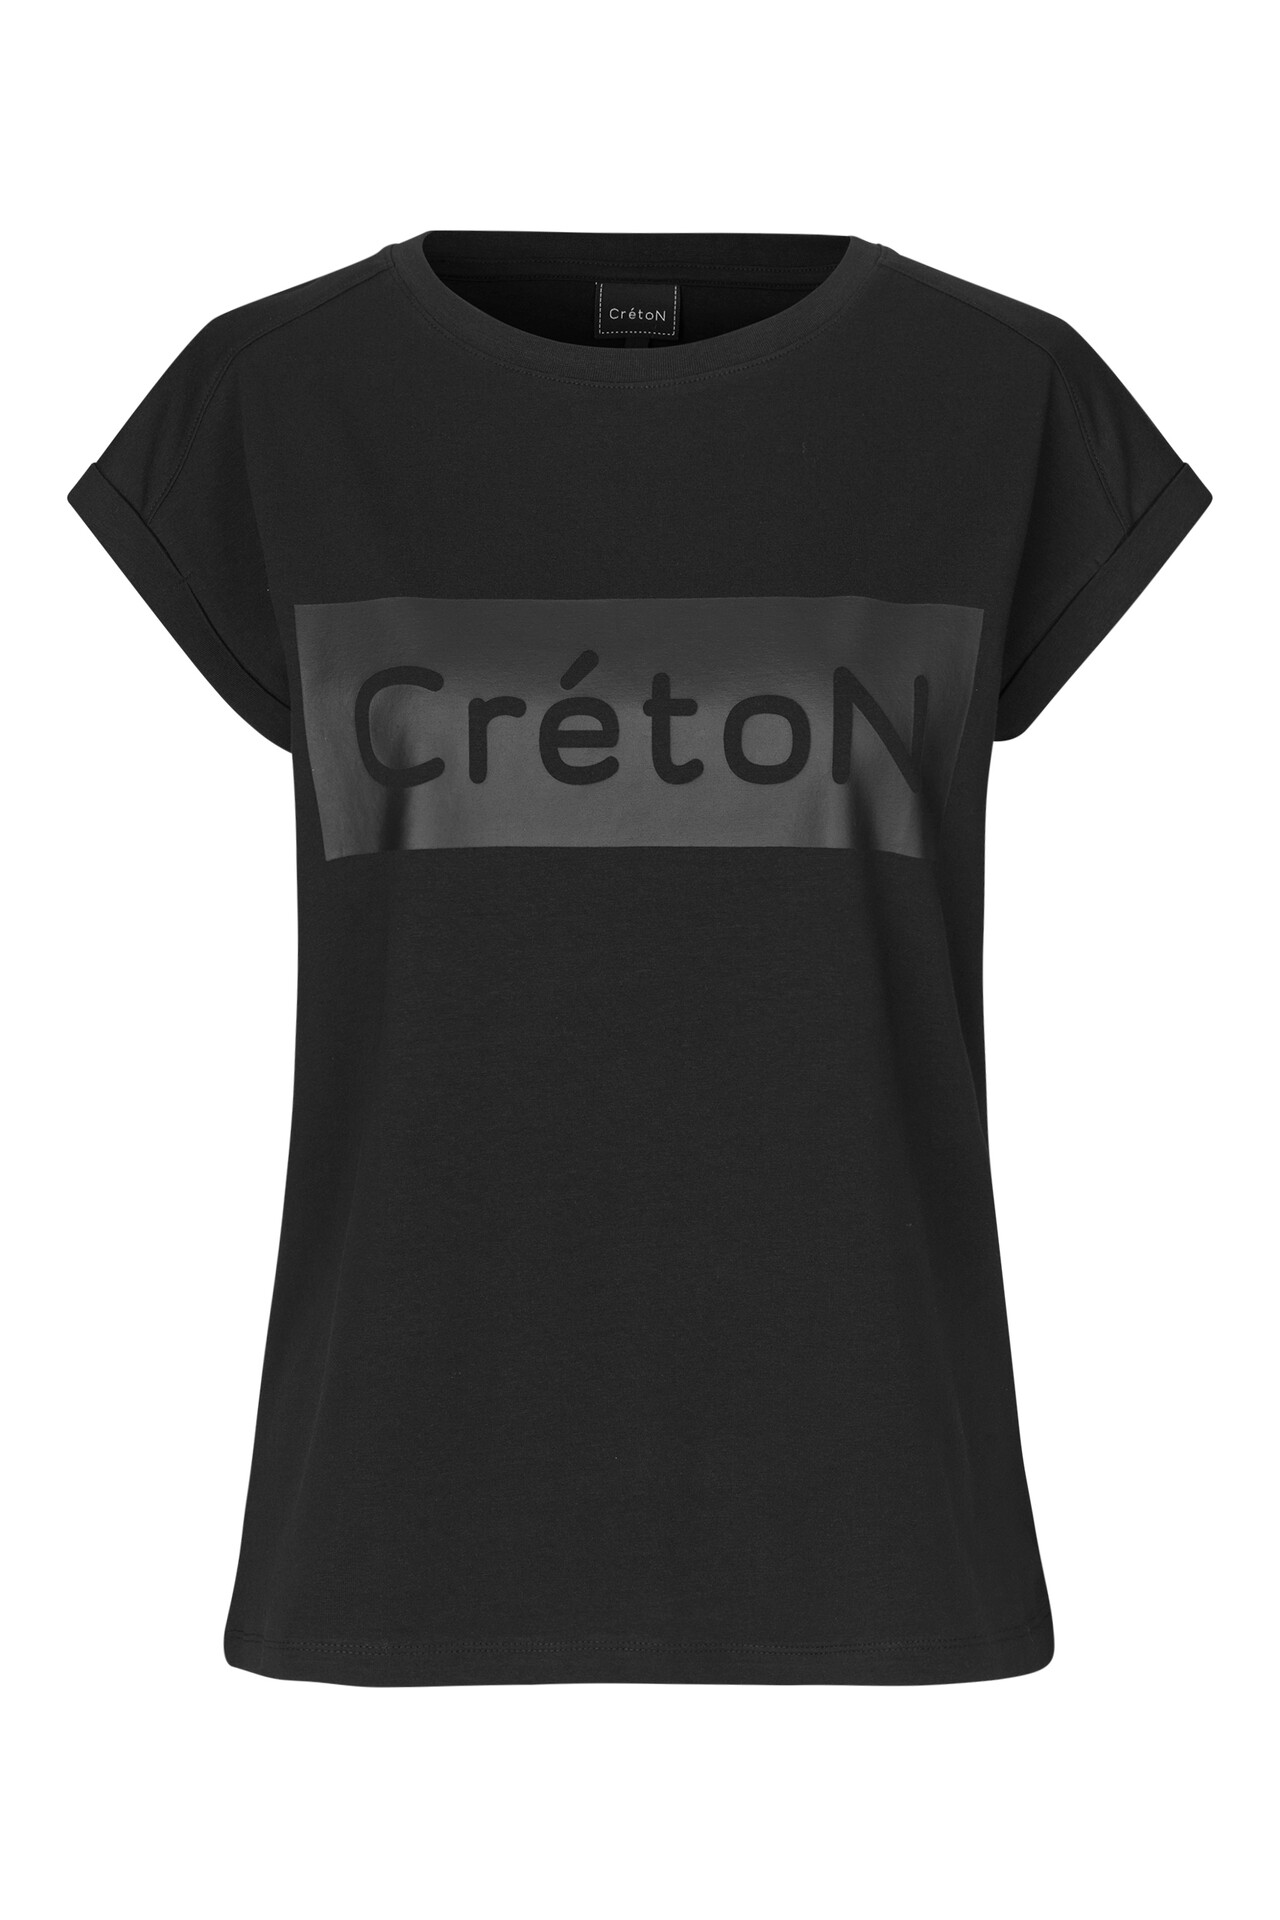 CRÉTON CRTenley C T-shirt  (SORT L)